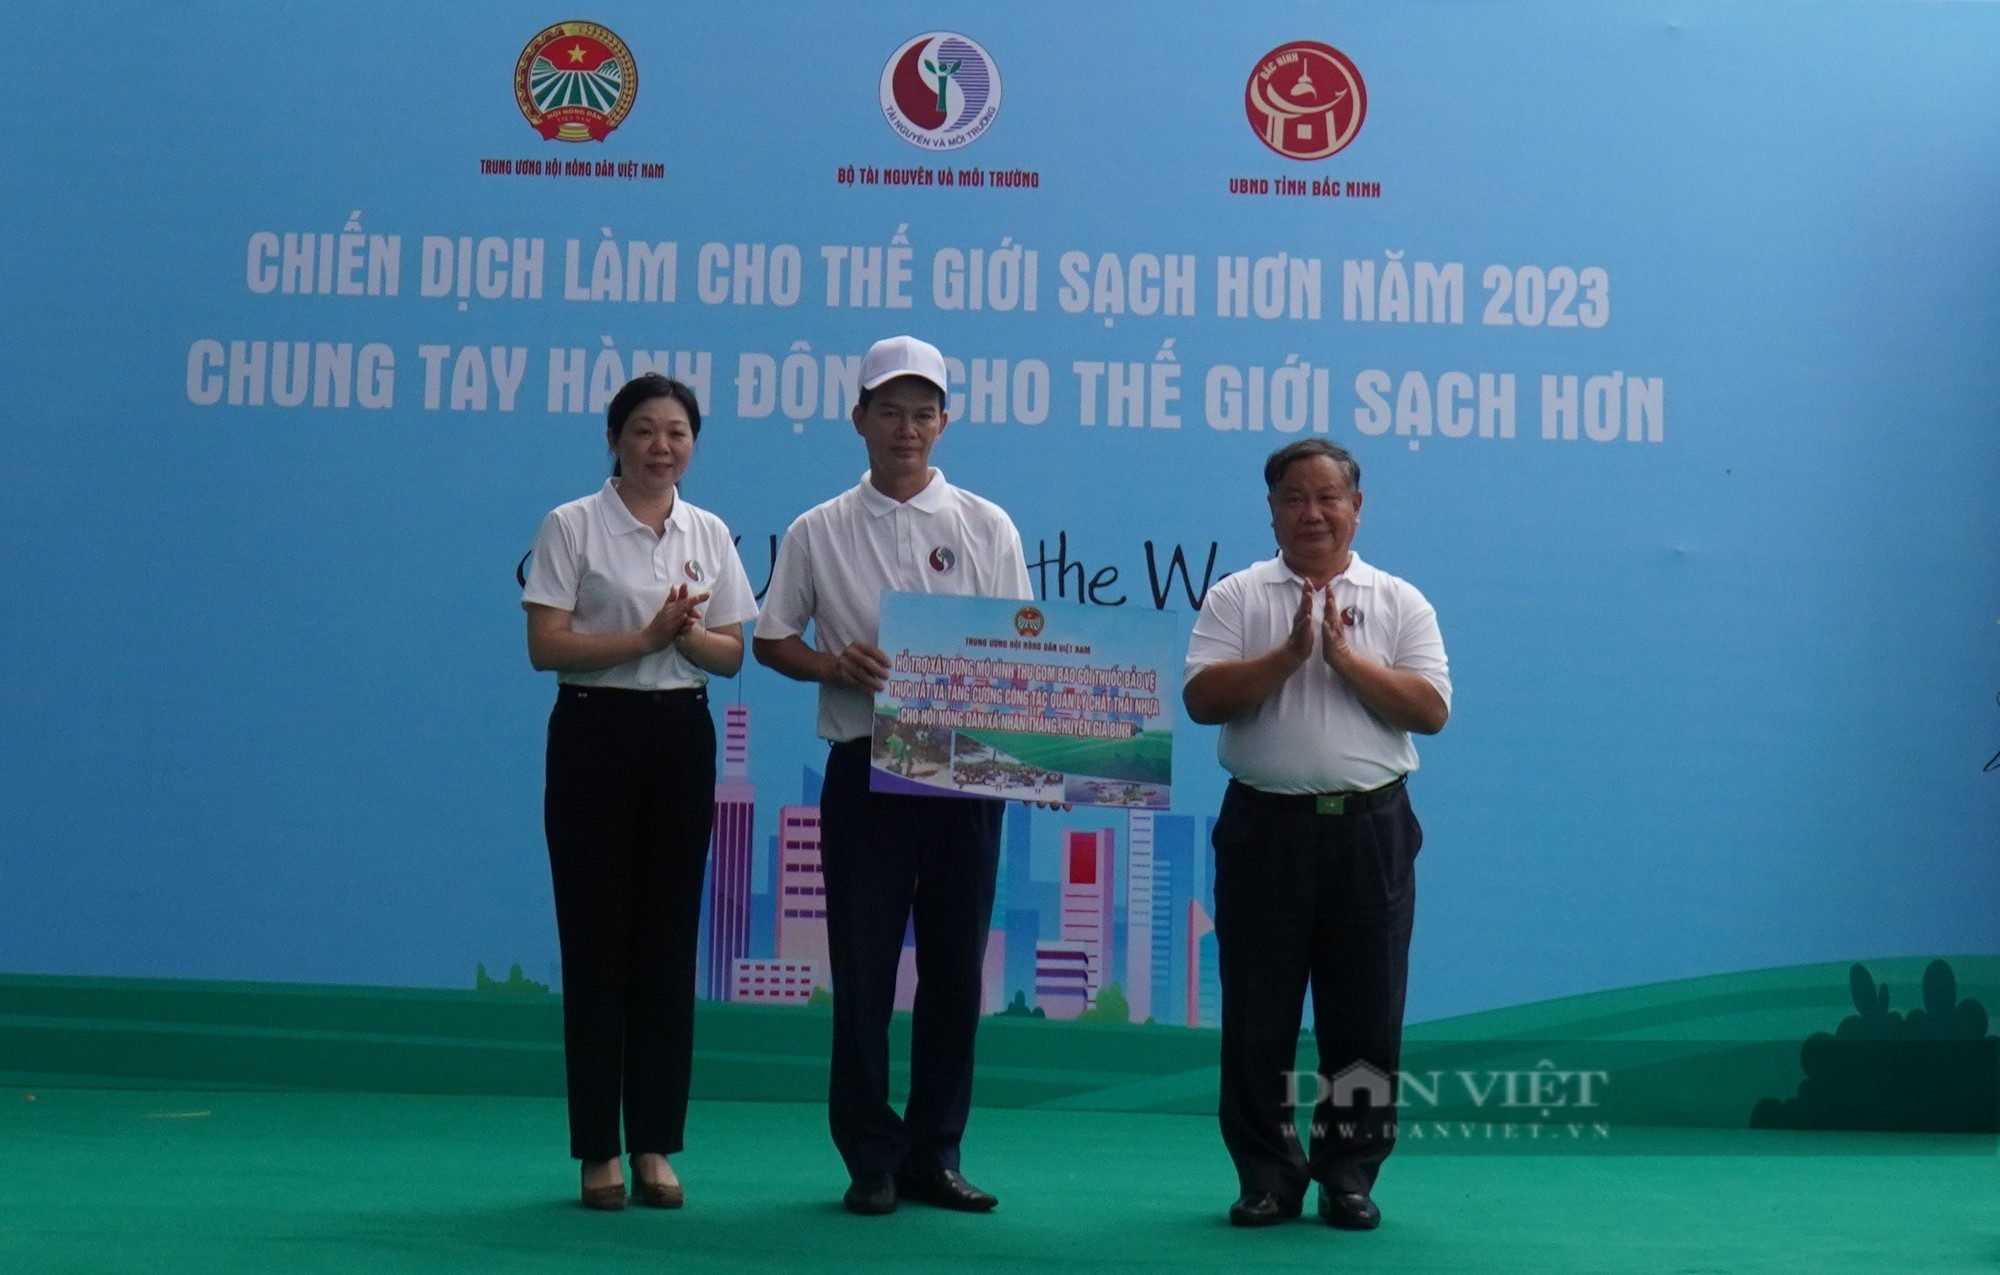 Trung ương Hội Nông dân Việt Nam cùng Bộ TNMT, tỉnh Bắc Ninh phát động Chiến dịch làm cho thế giới sạch hơn - Ảnh 5.